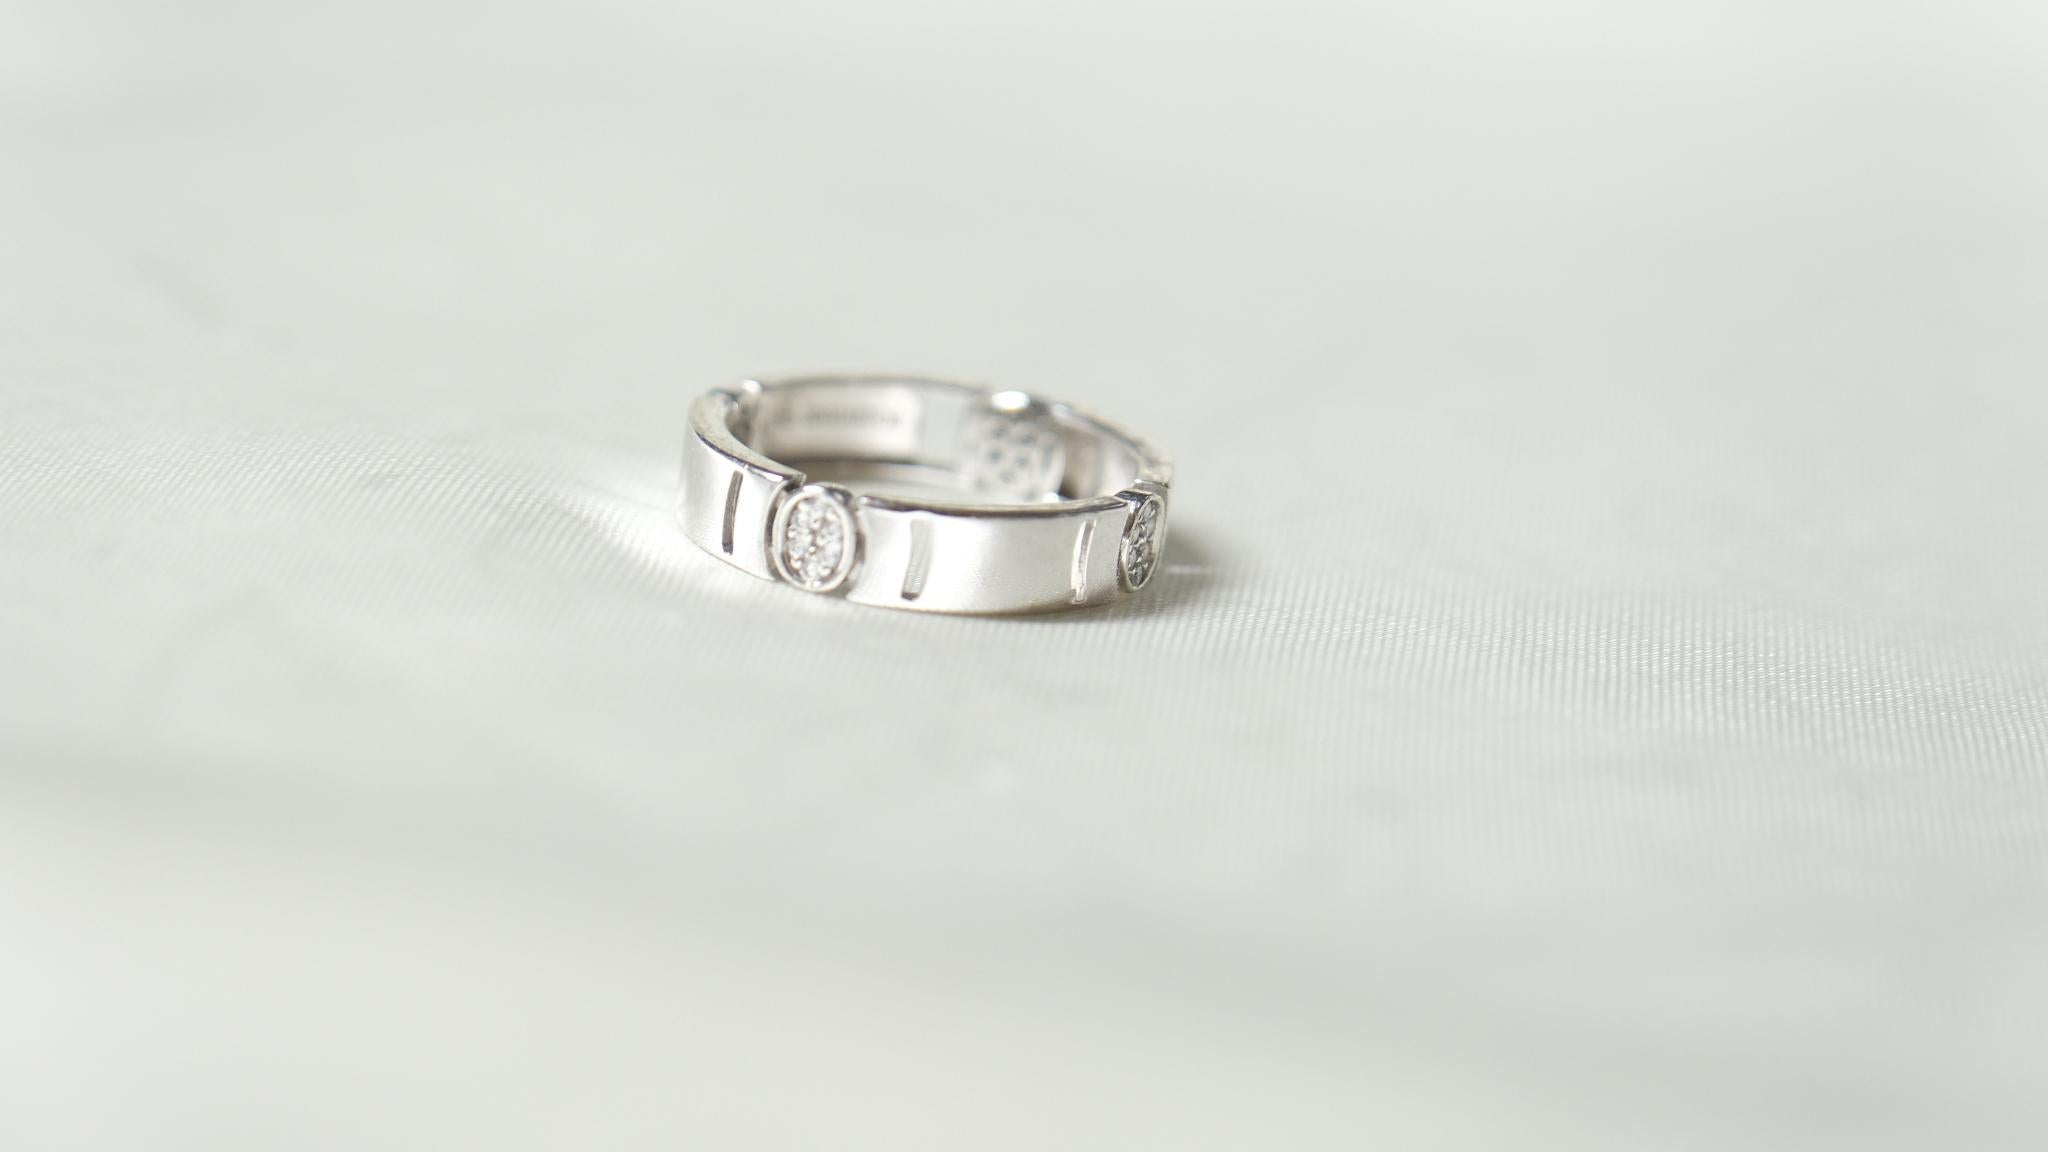 Der Ring Arrêtoir ist ein prächtiger Ausdruck von gebündelten Edelsteinen, die Kunst des Entdeckens auf eine fröhliche Art. Die handgefertigte Perfektion der ovalen Hängeform mit kostbaren Edelsteinen macht sie zu einem unvergleichlichen Kunstwerk.